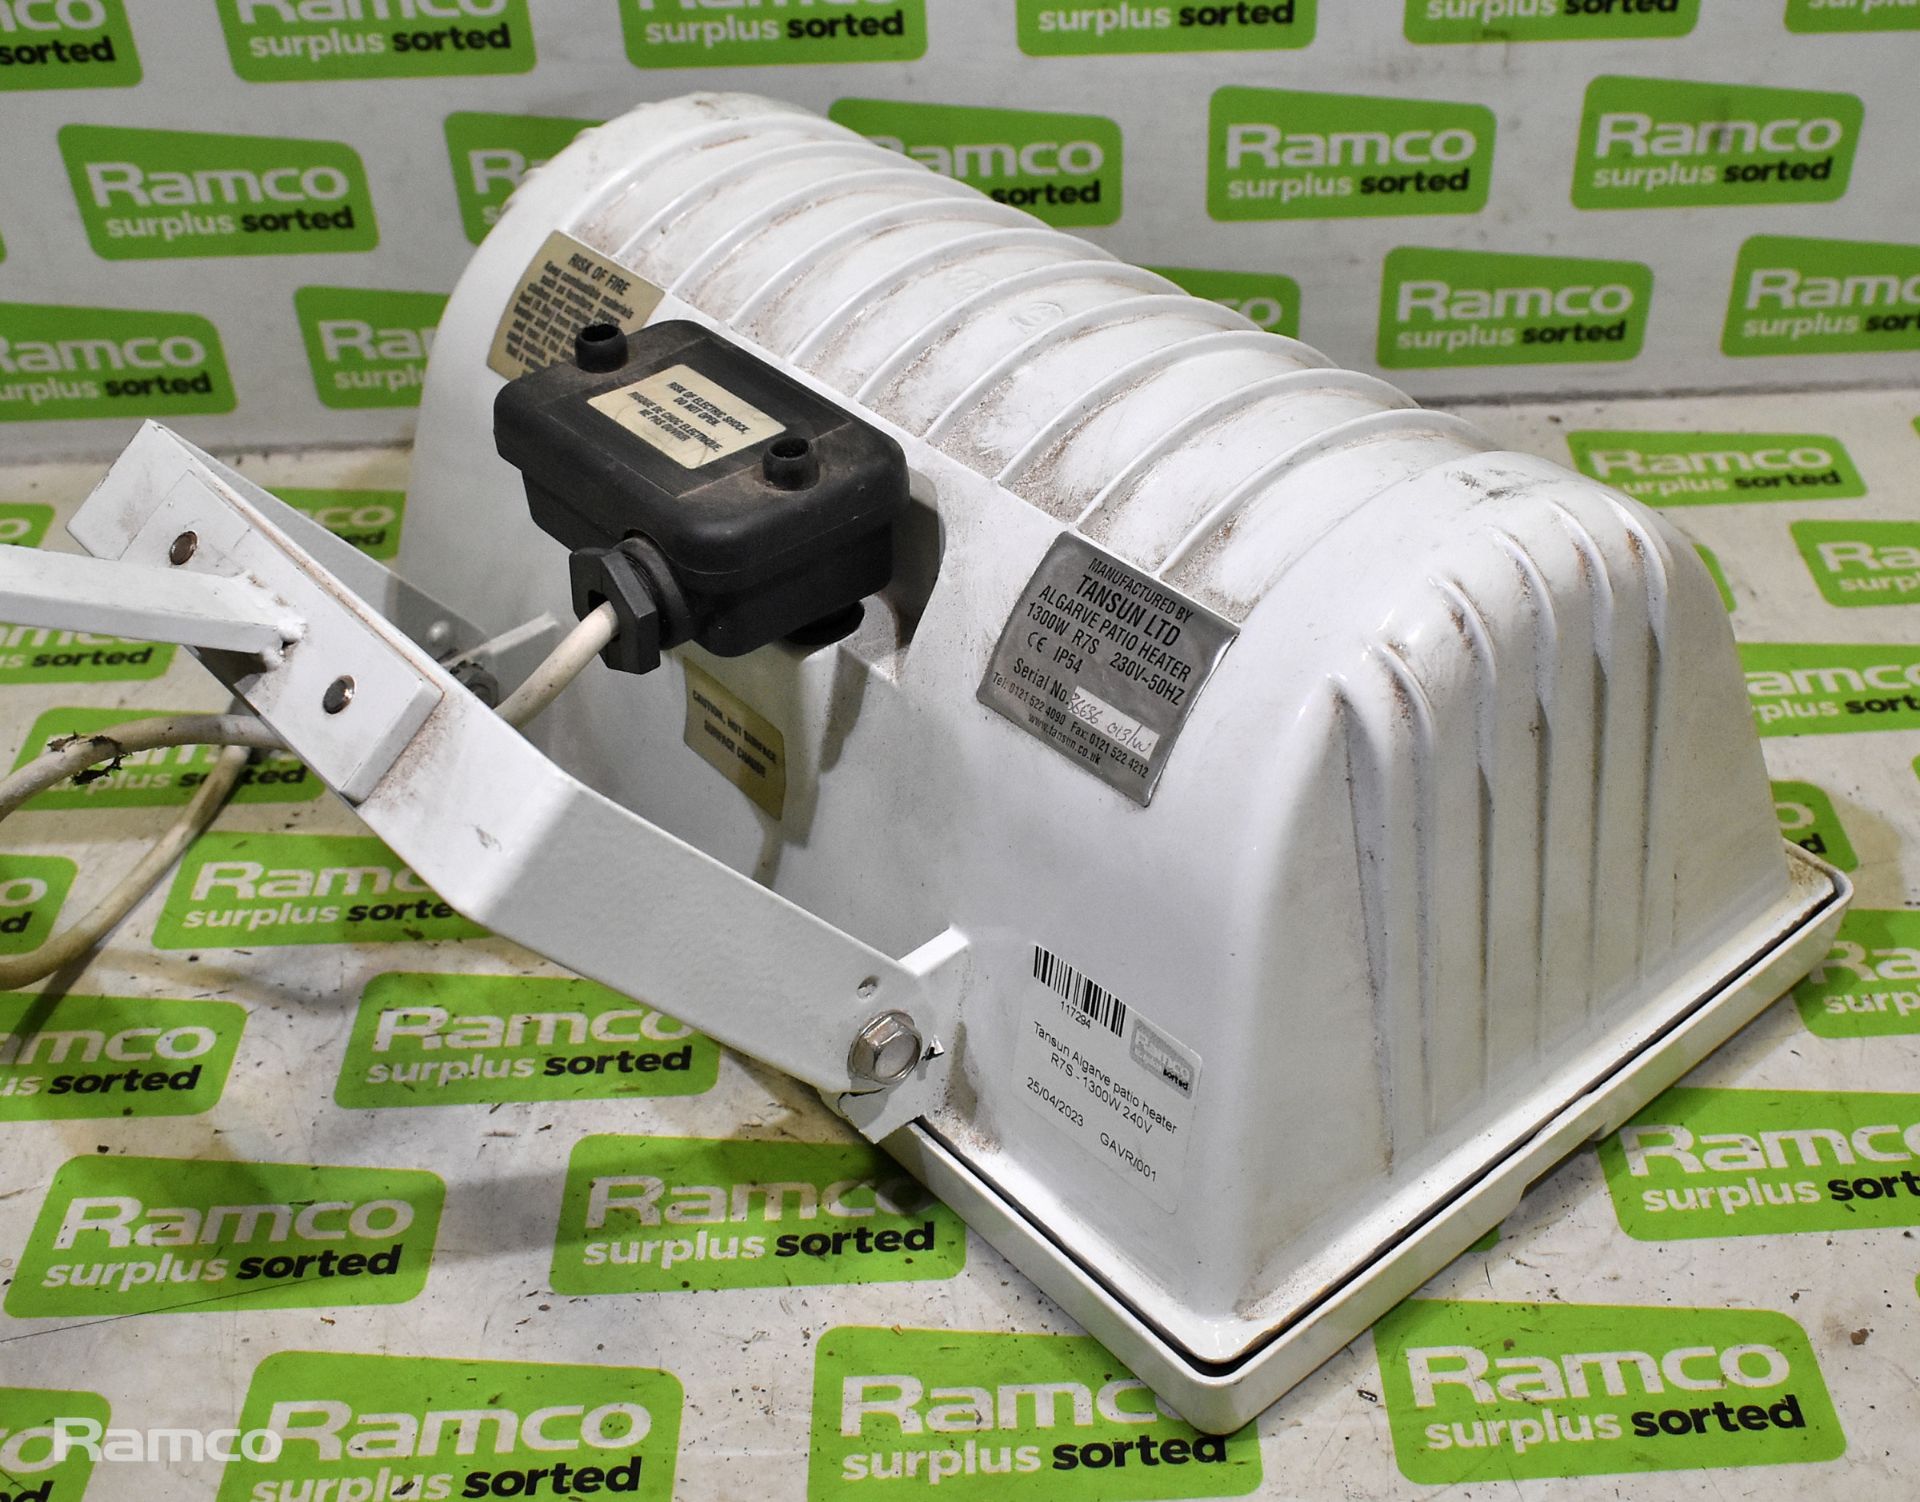 Tansun Algarve patio heater R7S - 1300W 240V - Image 3 of 3